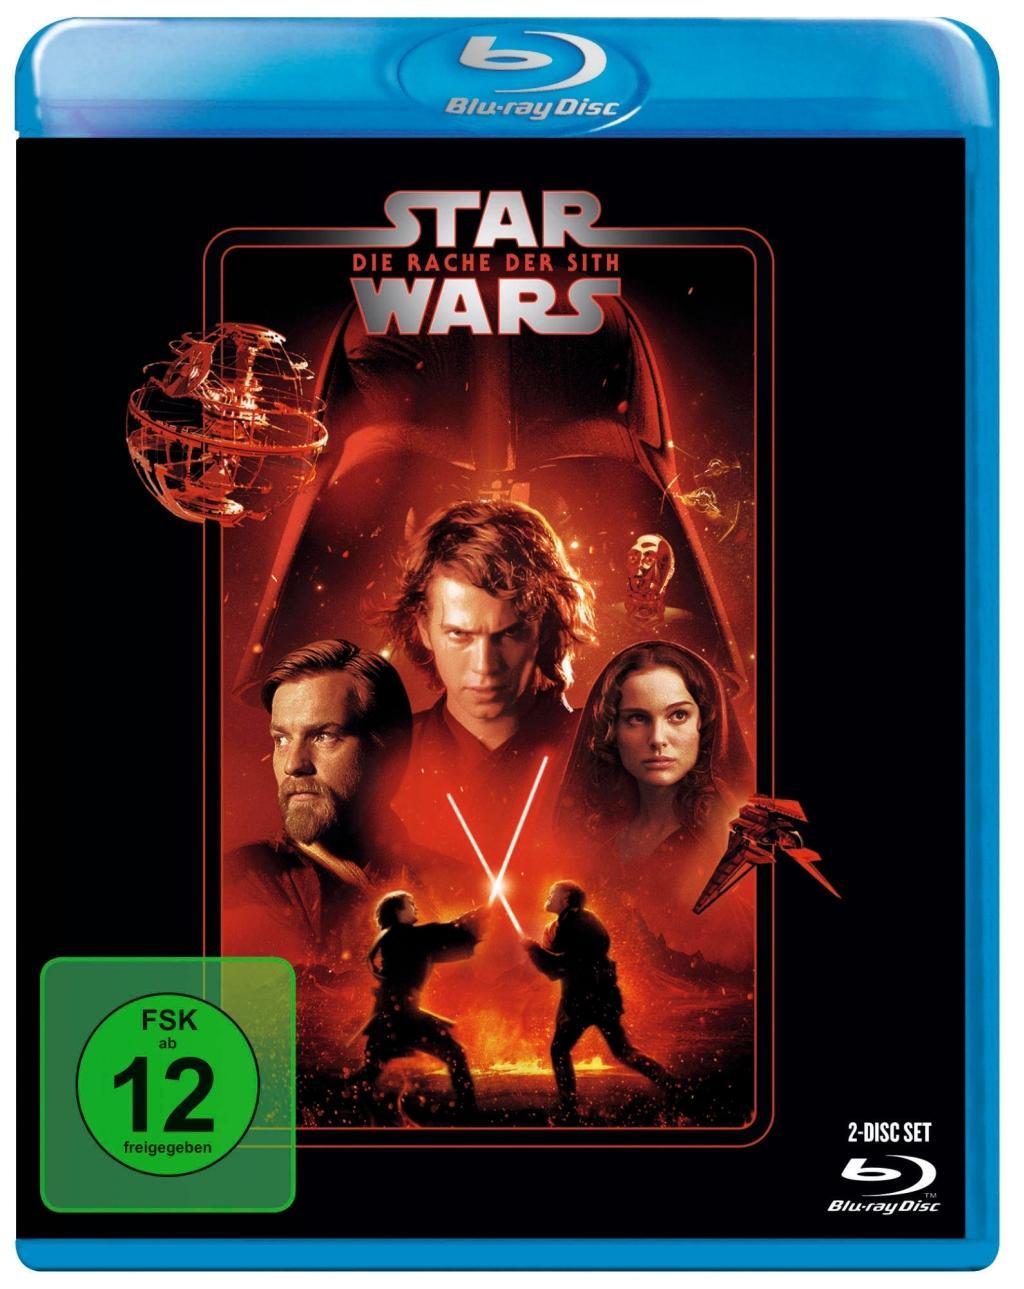 Video Star Wars Episode 3, Die Rache der Sith, 1 Blu-ray George Lucas